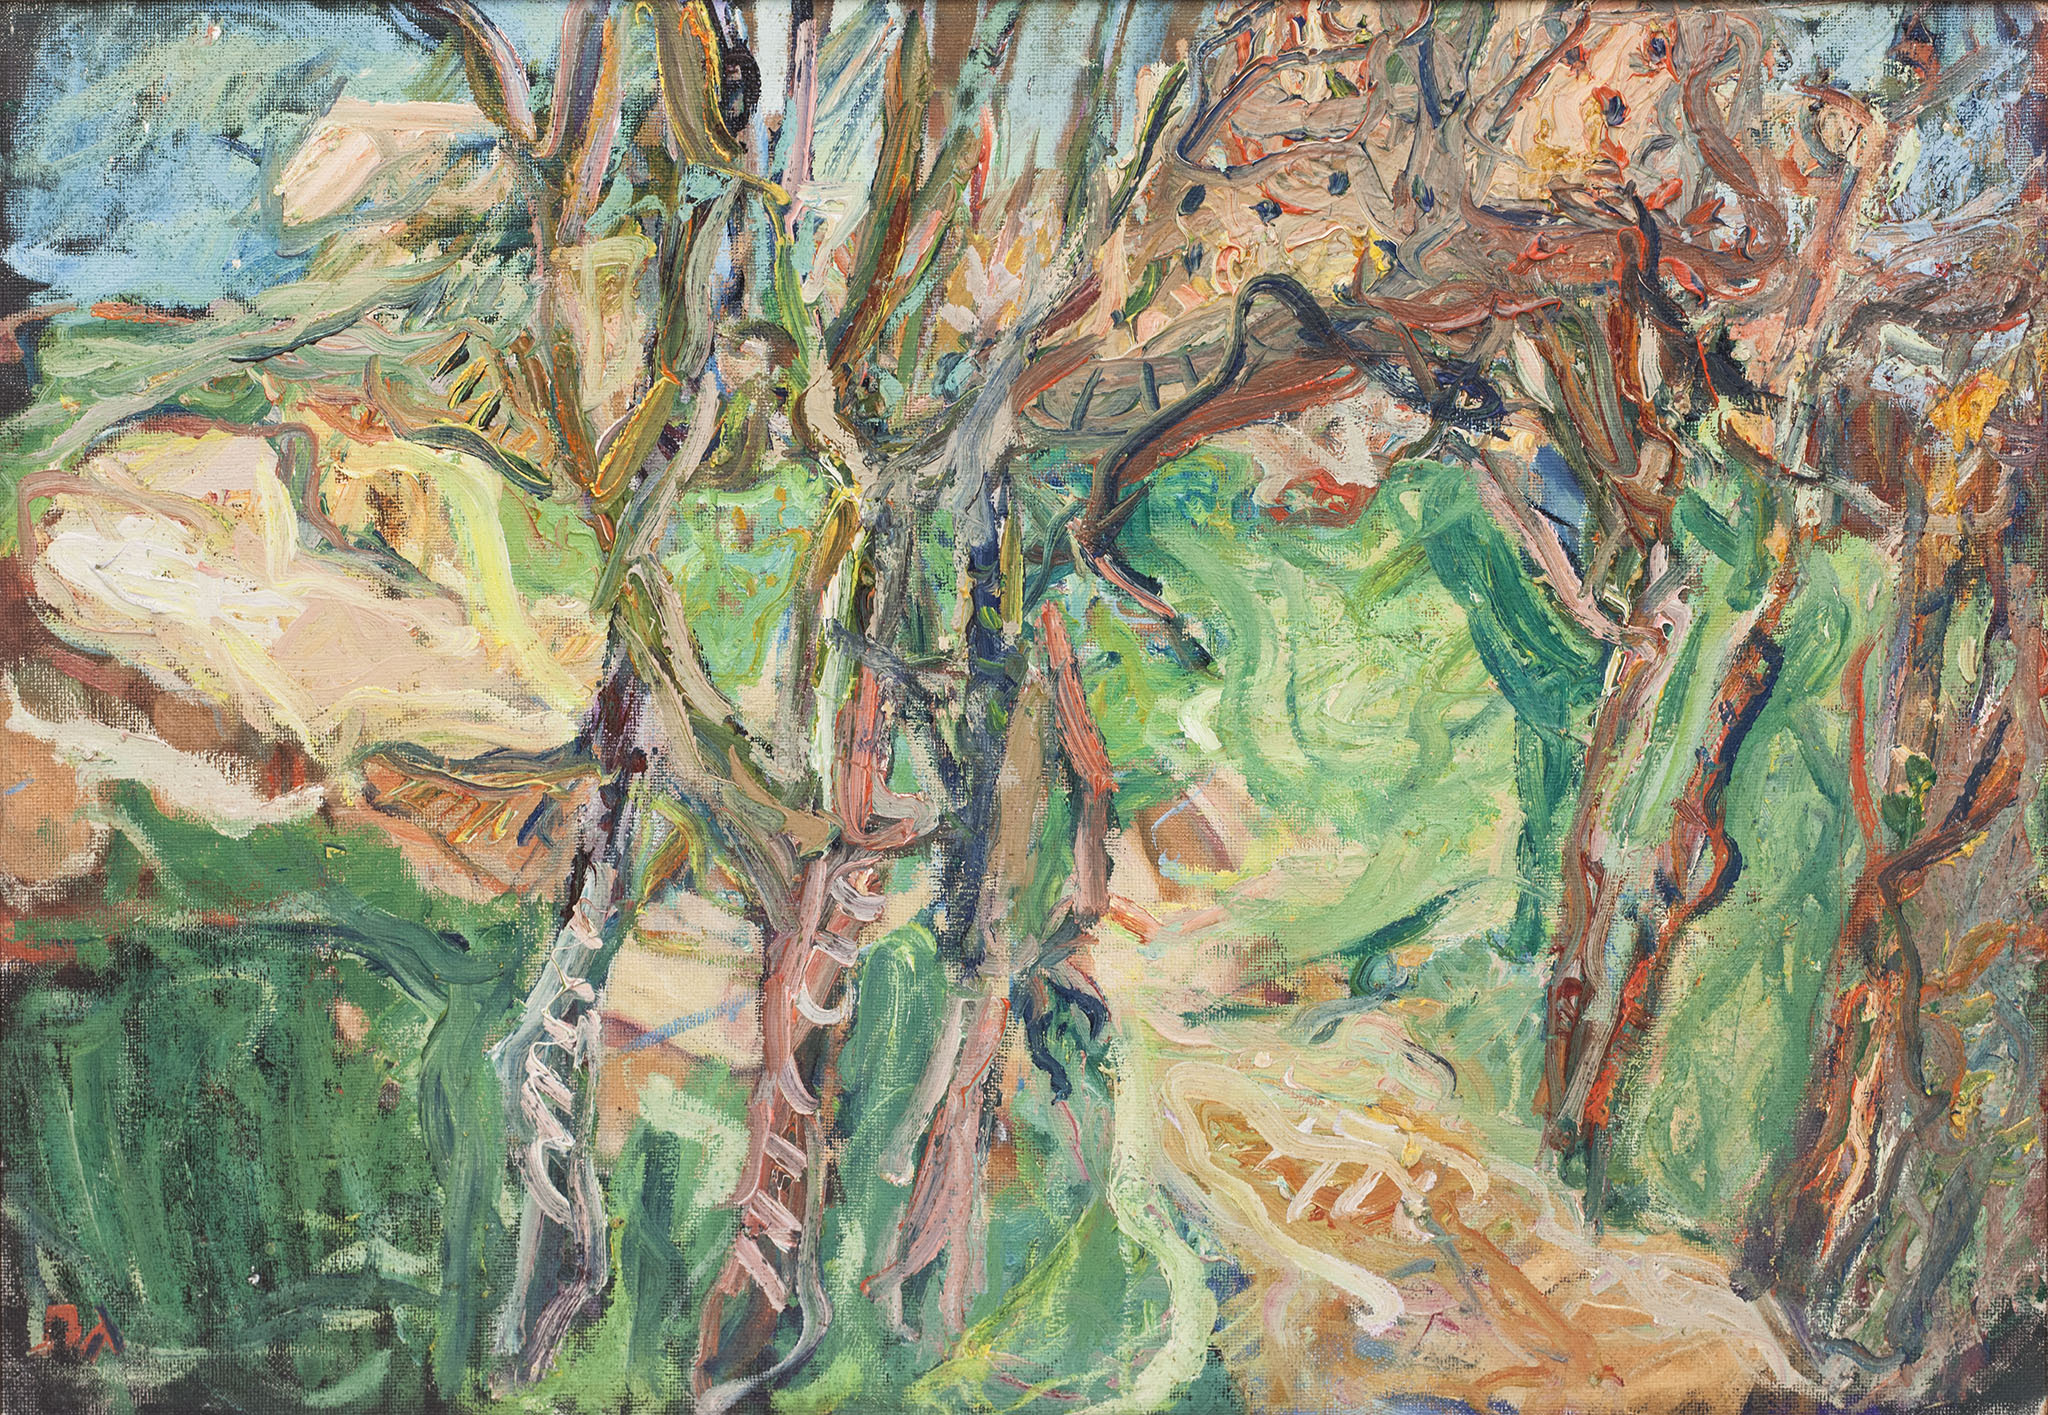 אליהו גת, "נוף עם עצים", שמן על מזוניט, 81x56 ס"מ